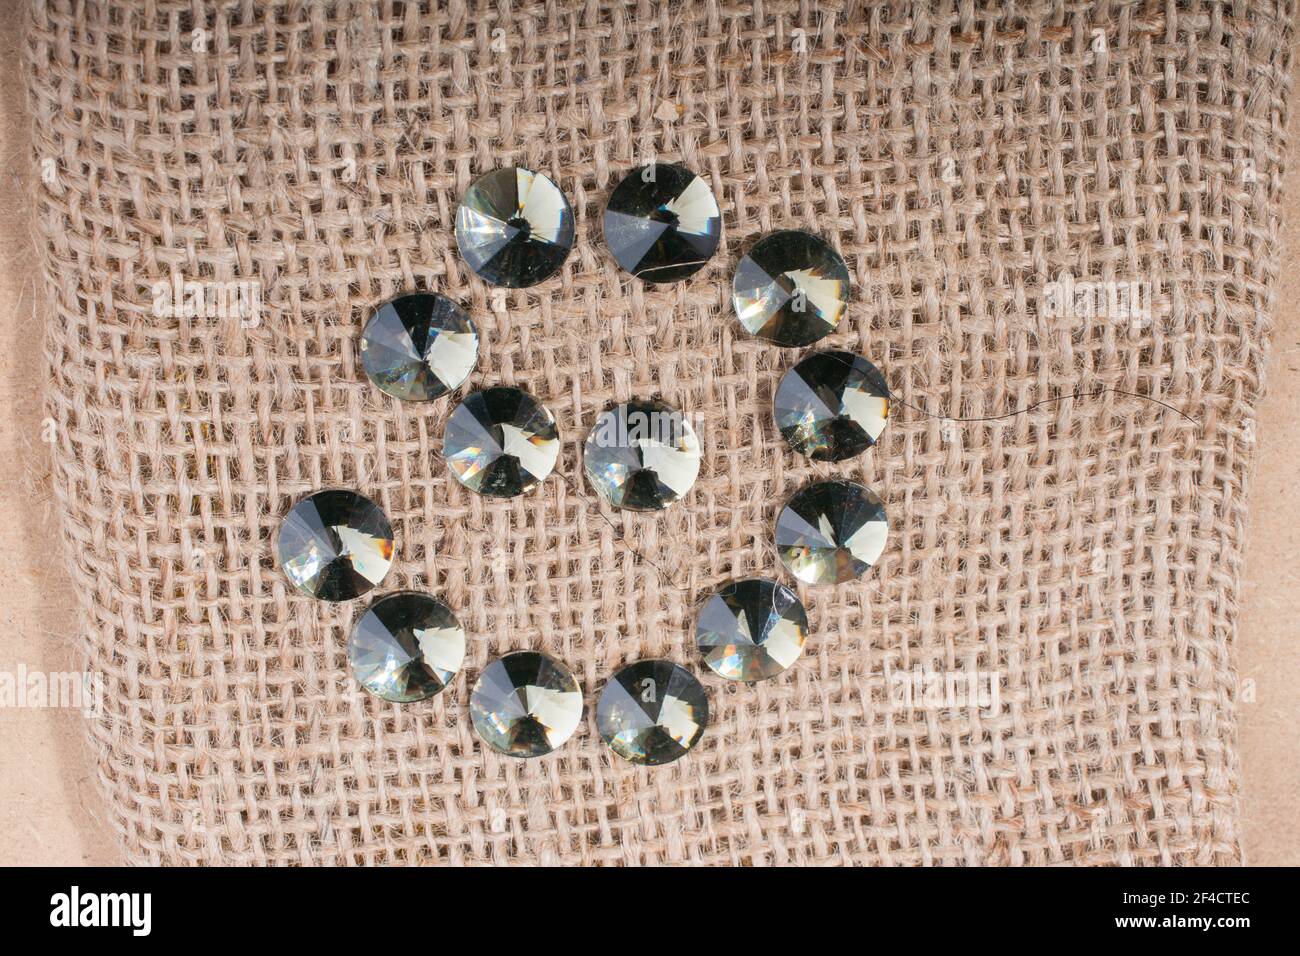 Eine Nahaufnahme von Diamanten in einem spiralförmigen Muster auf Eine braune Oberfläche Stockfoto